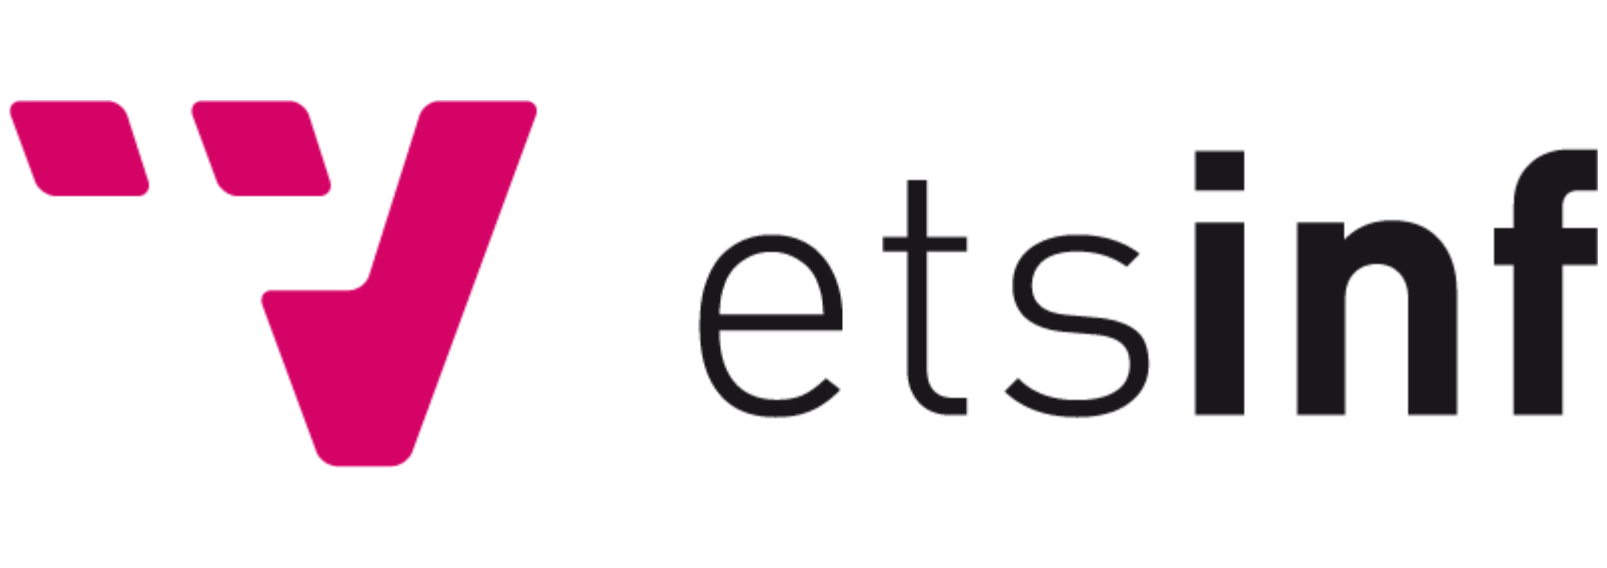 logo etsinf